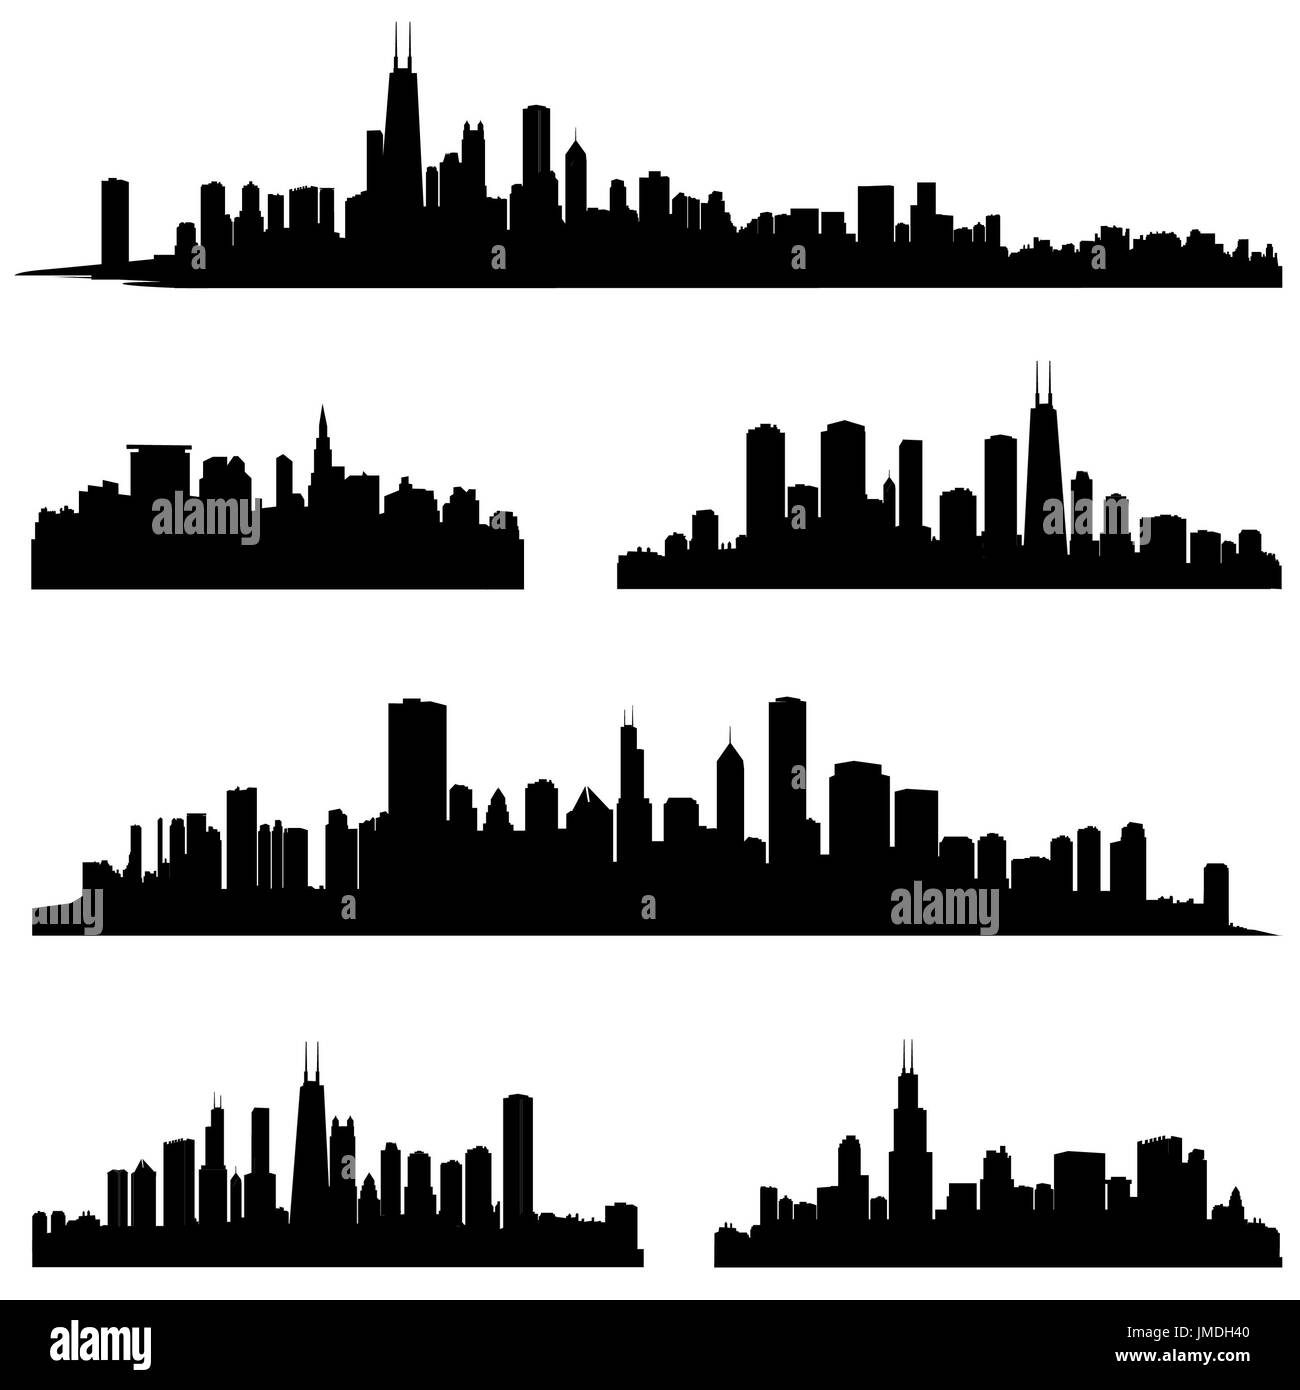 Vektorgrafik für die Silhouette einer Stadt. Panorama Stadt Hintergrund. Skyline Urban Border Kollektion. Stockfoto